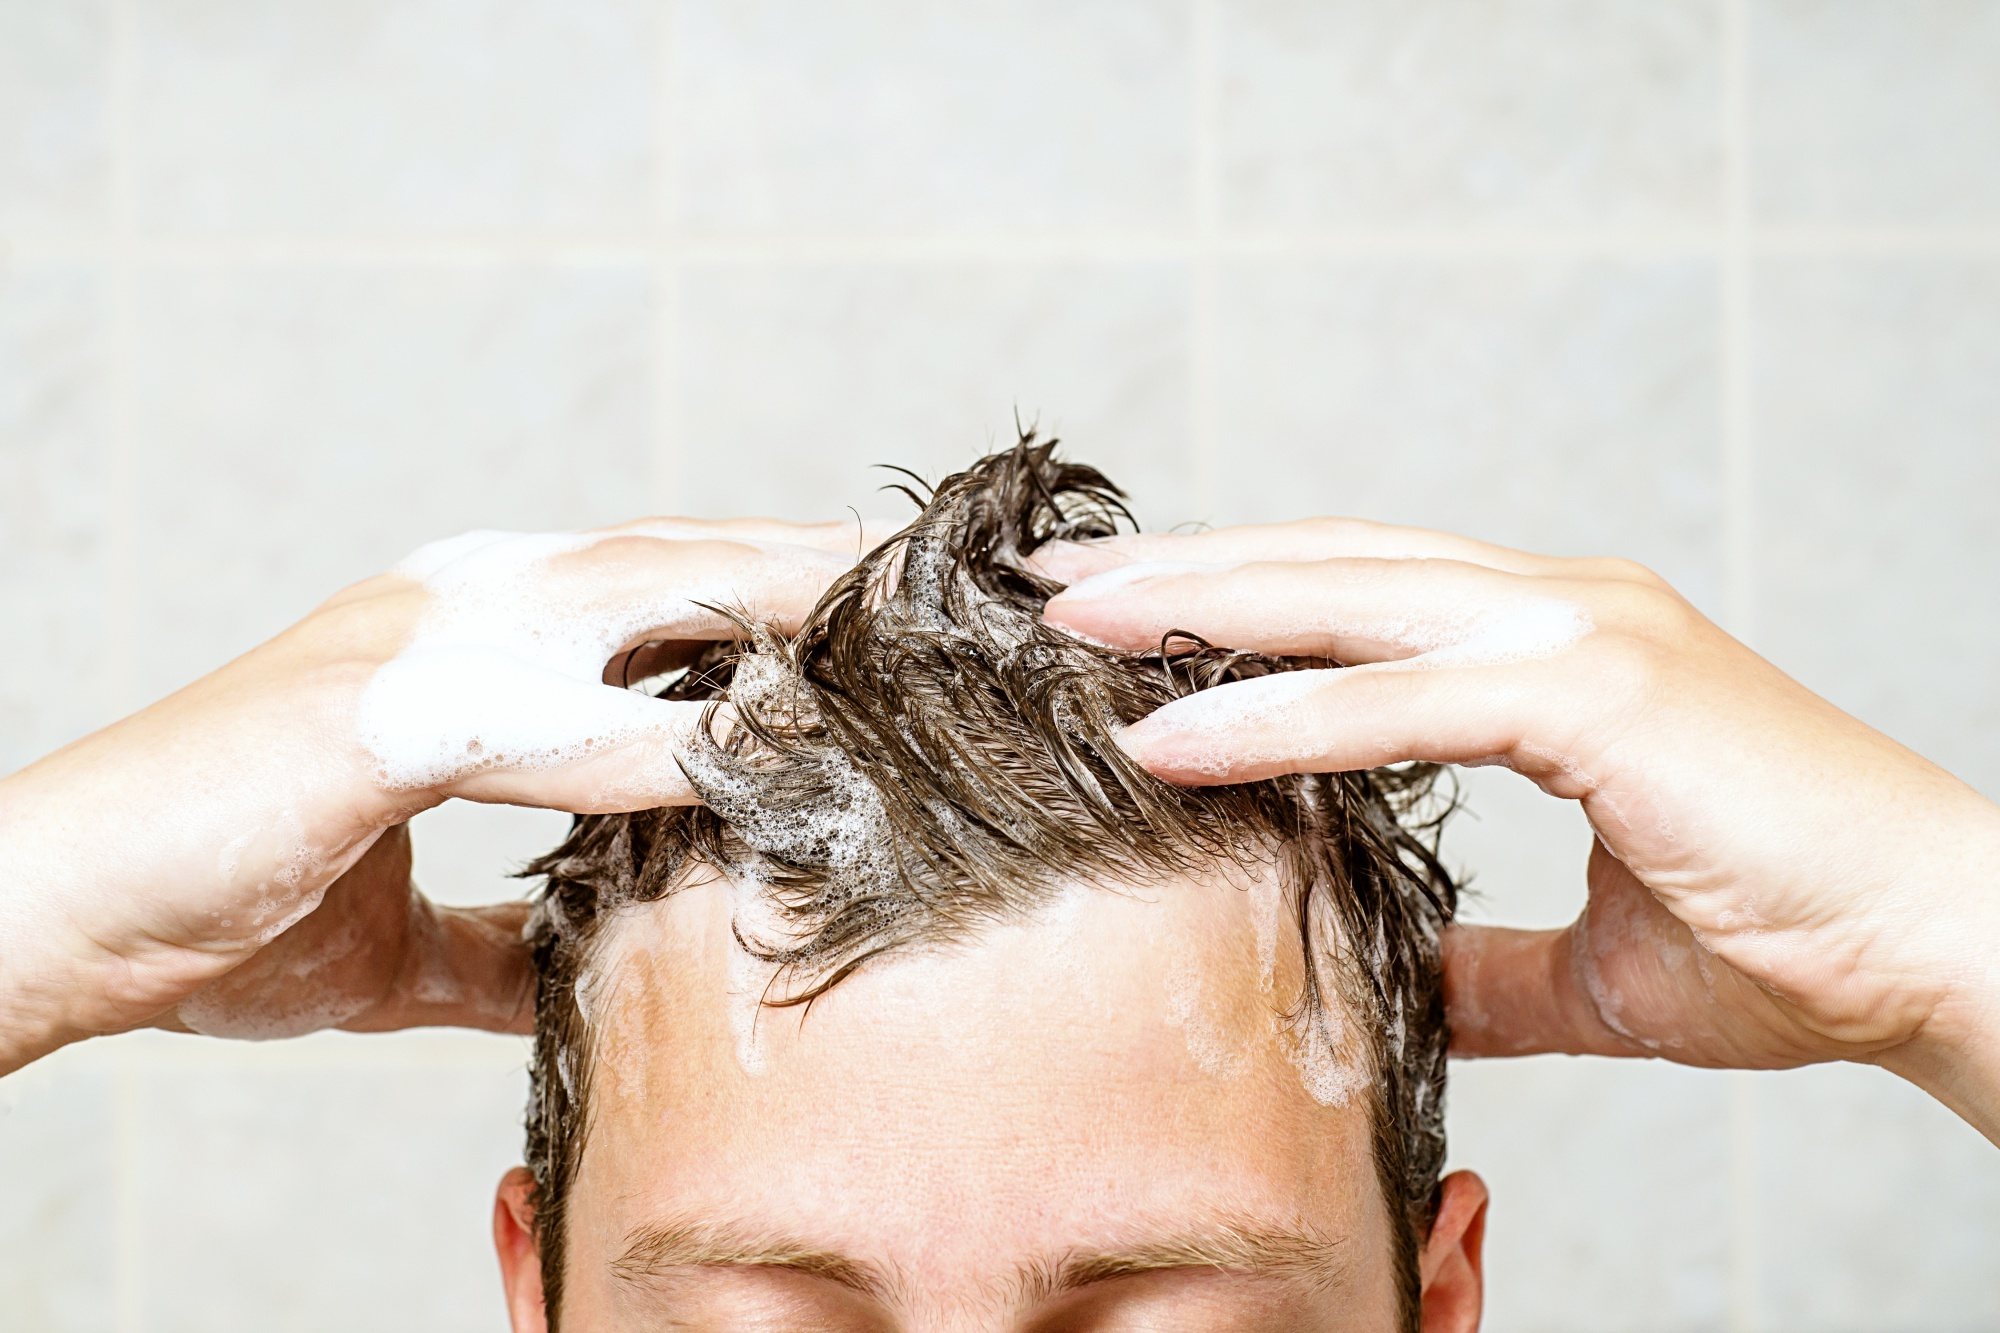 mens-grooming-wash-hair-shutterstock.jpg